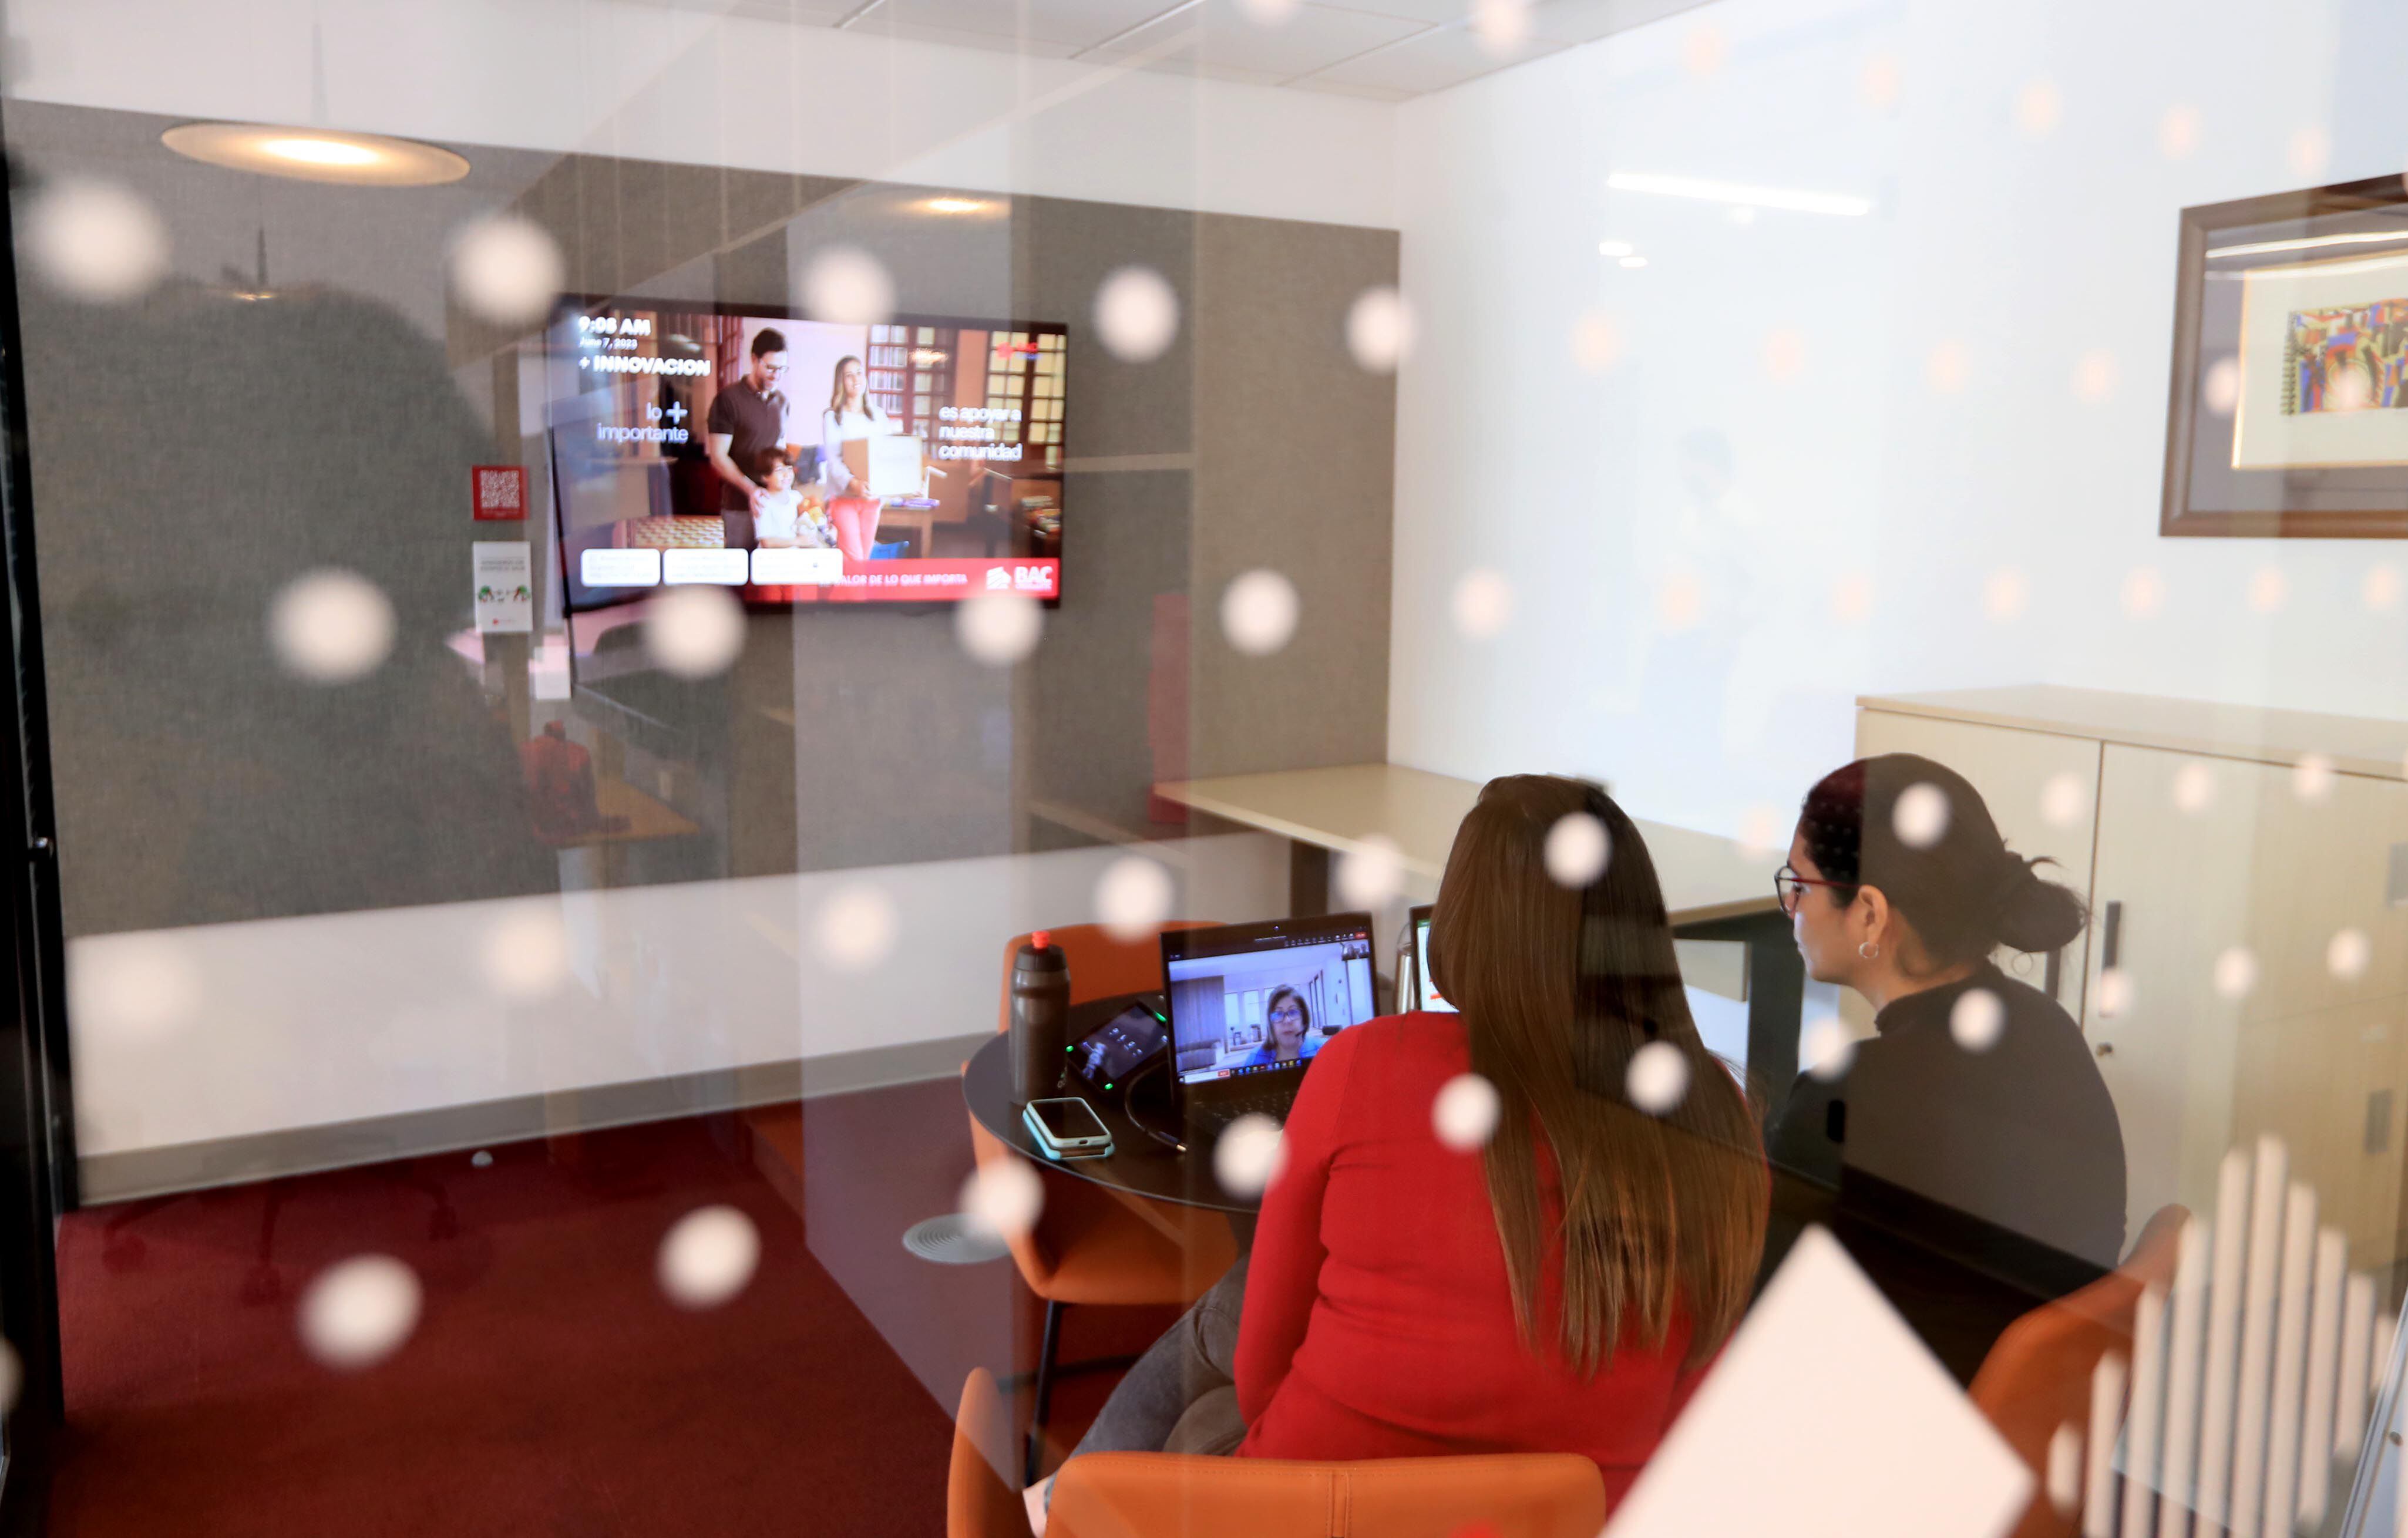 Las salas de reuniones pasaron de tener pantallas para presentación de filminas a contar con tecnología para reuniones presenciales y virtuales. (Foto Alonso Tenorio)